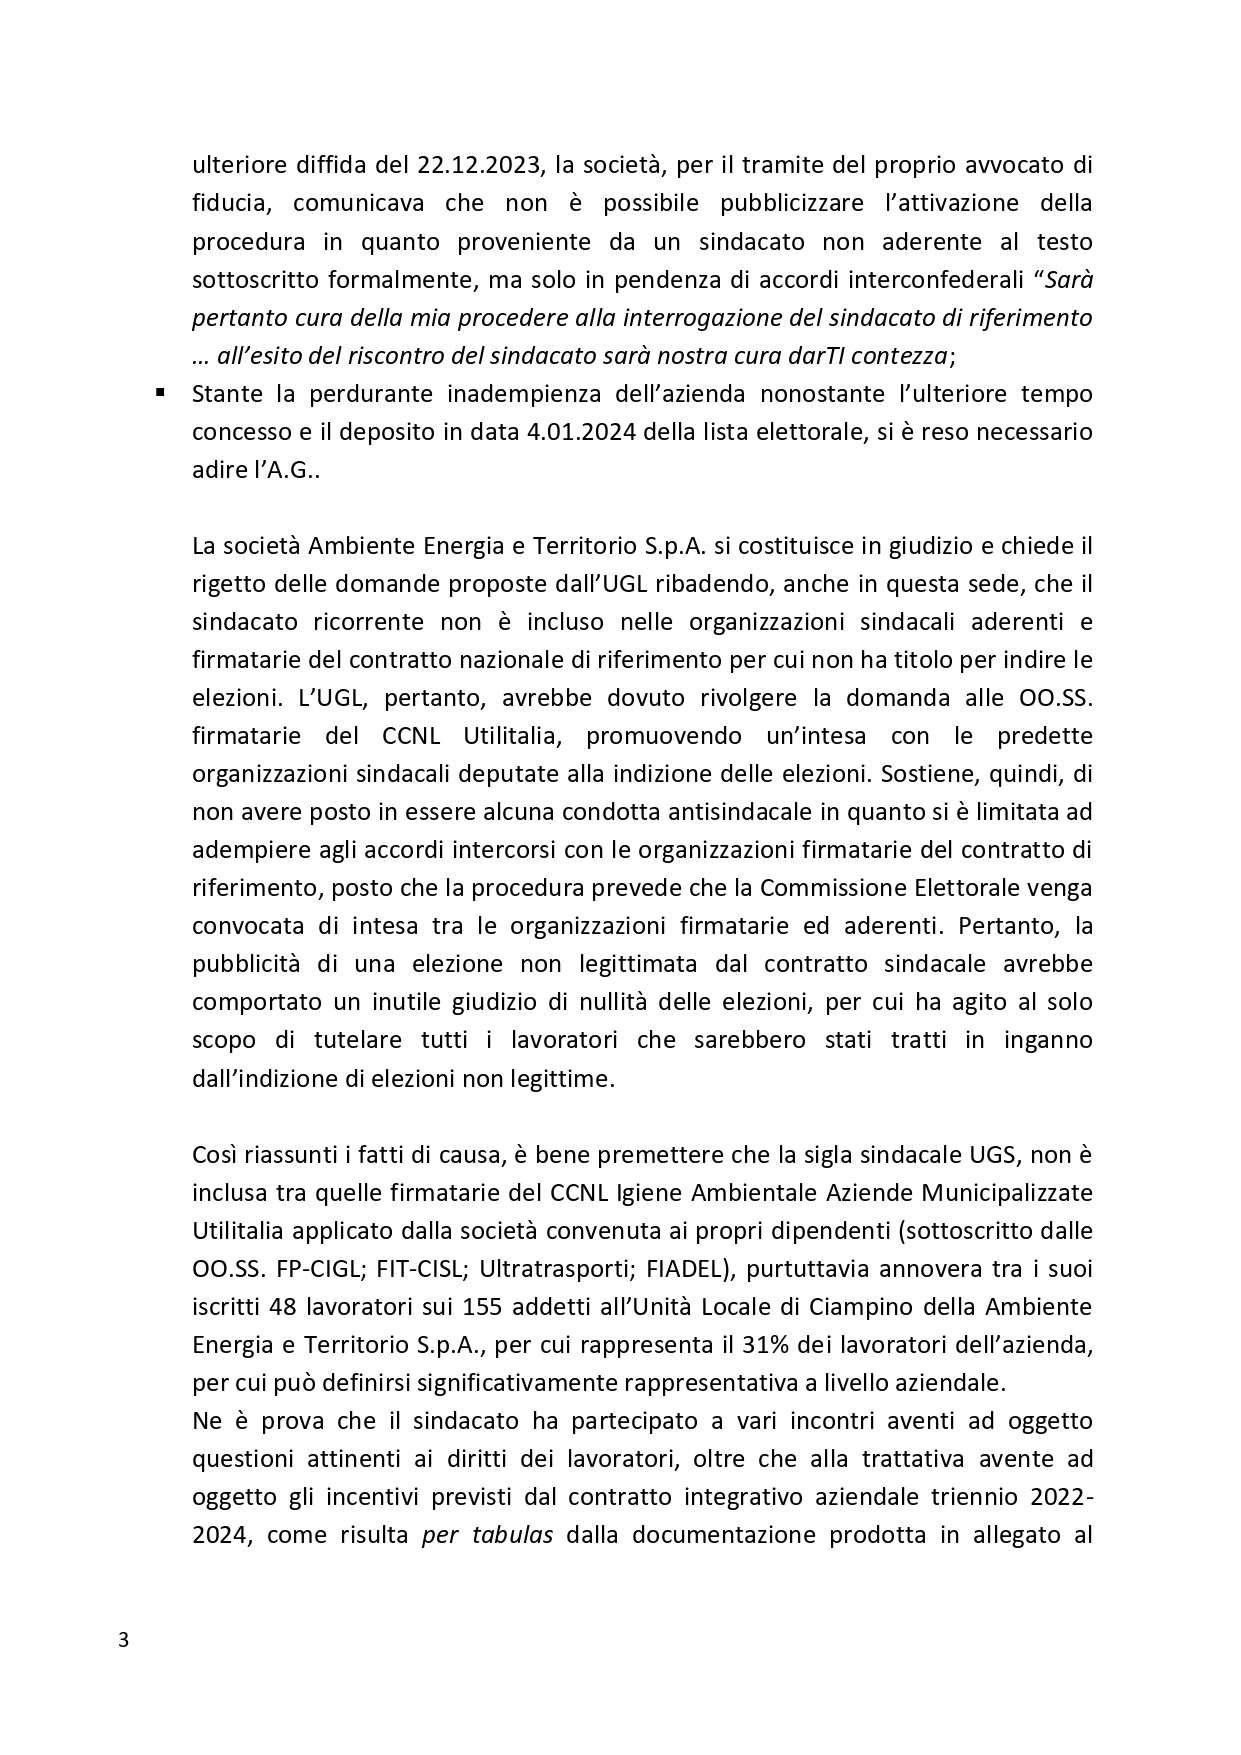 Decreto UGL Ambiente 1 page 0003